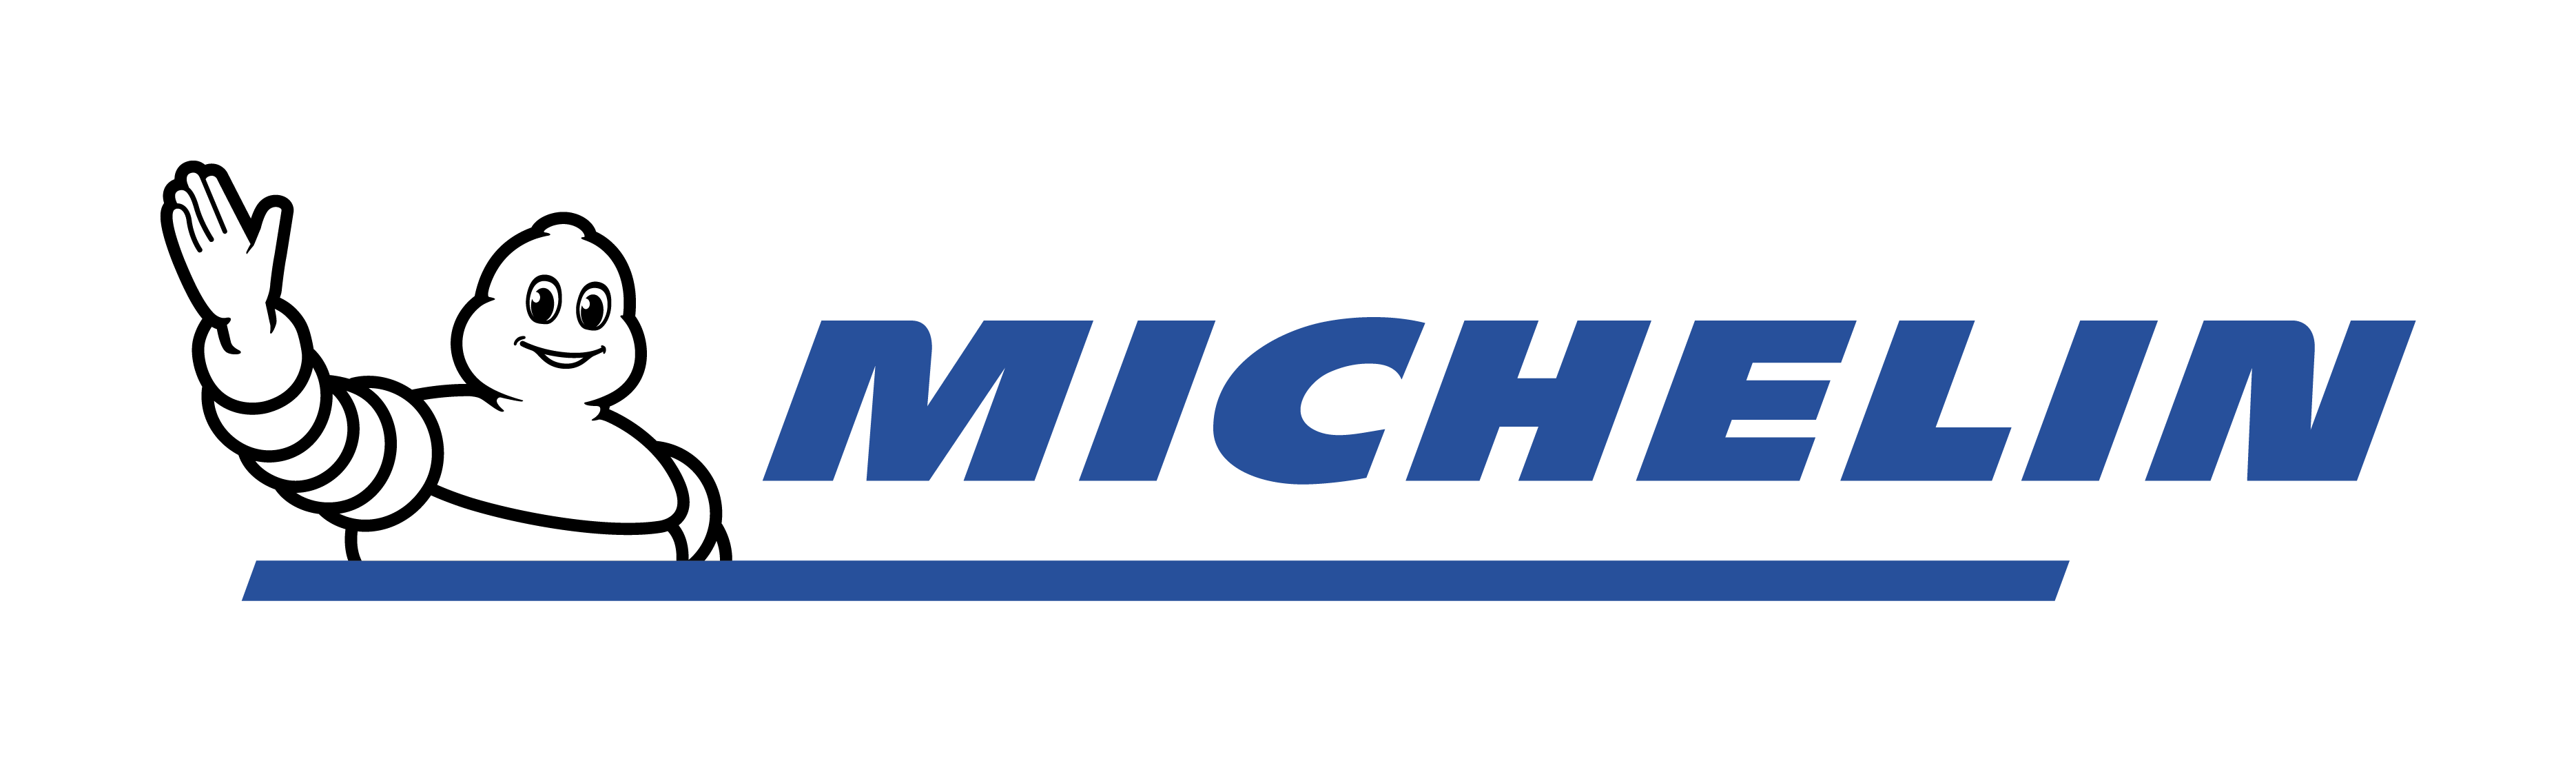 Michelin logo. Мишлен. Логотип шины. Шины логотипы брендов. Логотип марки Мишлен.